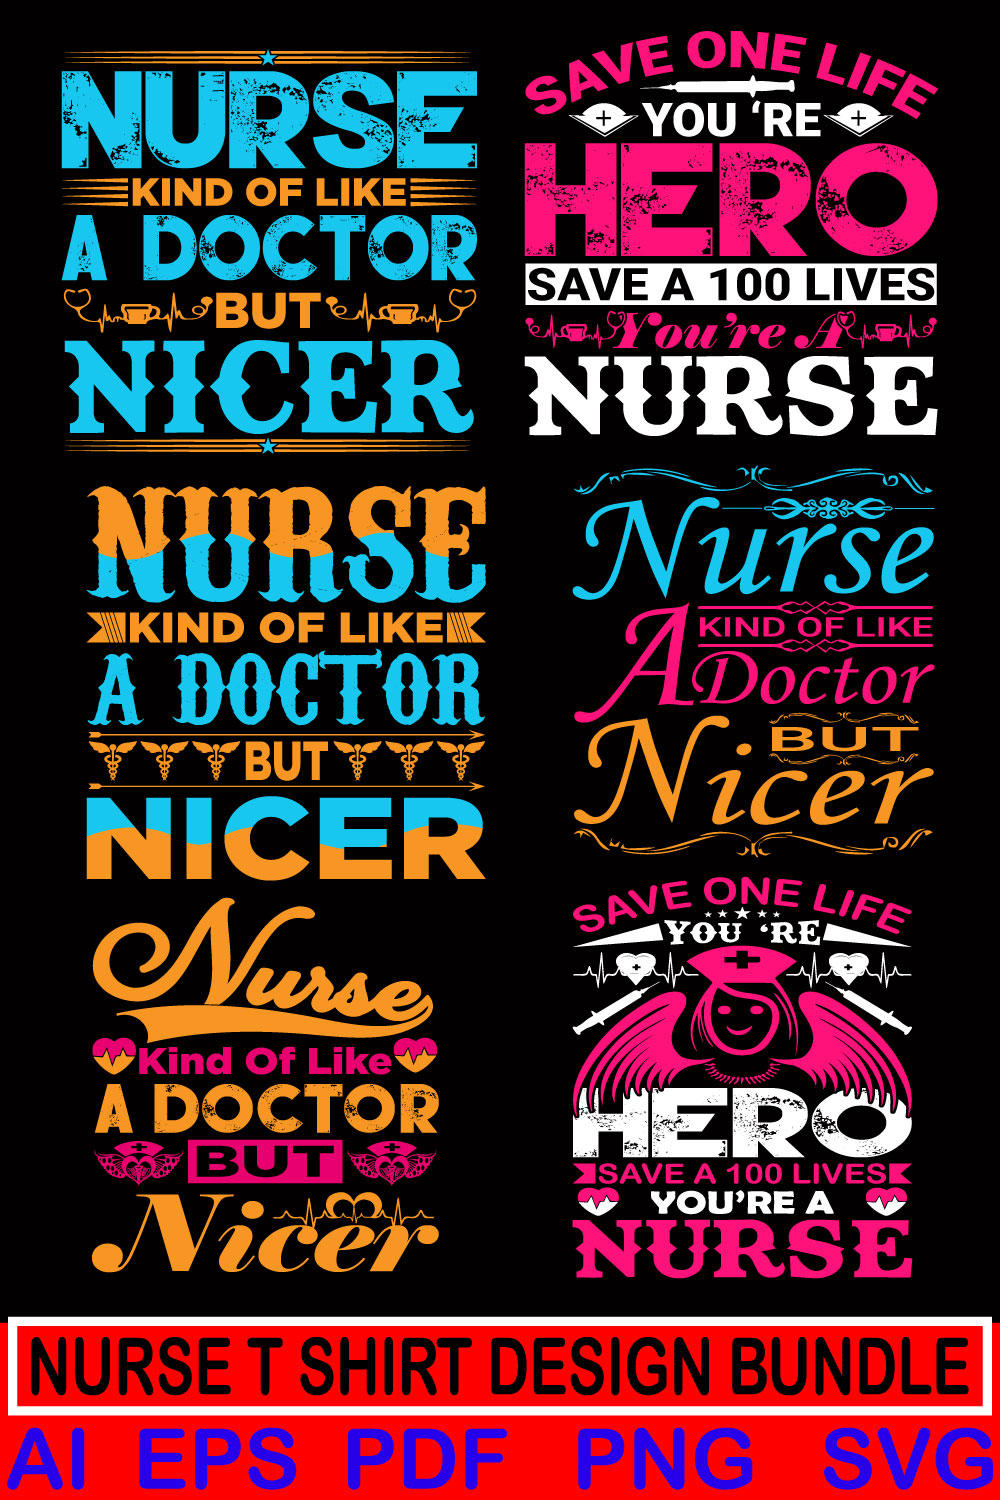 typography Nurse t-shirt design bundle pinterest preview image.